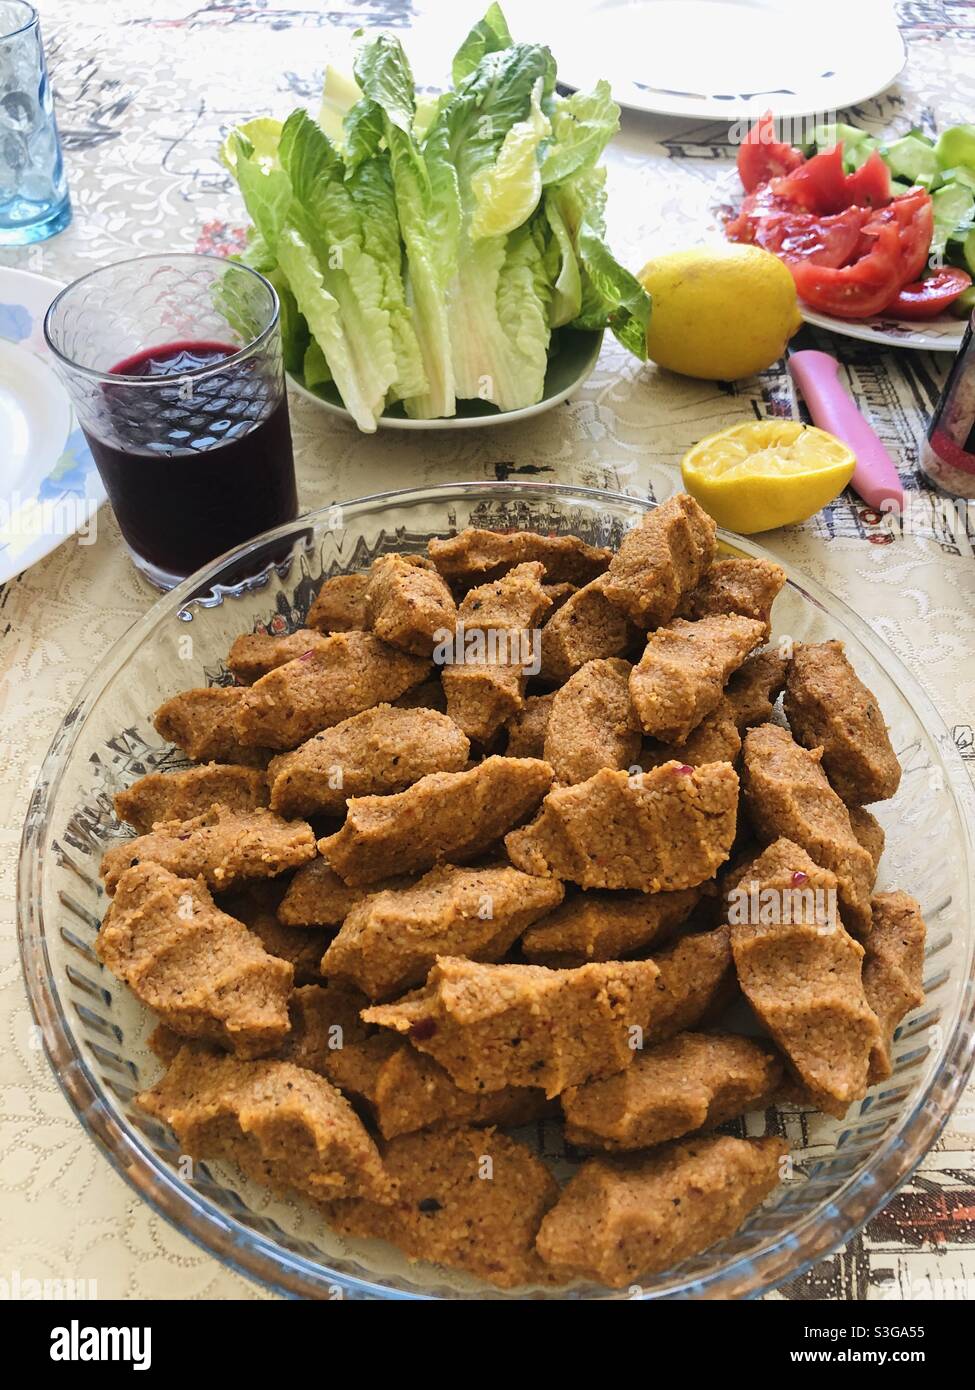 Türkisches veganes Gericht namens Cig Kofte, das mit Gemüse und Rübensaft serviert wird Stockfoto